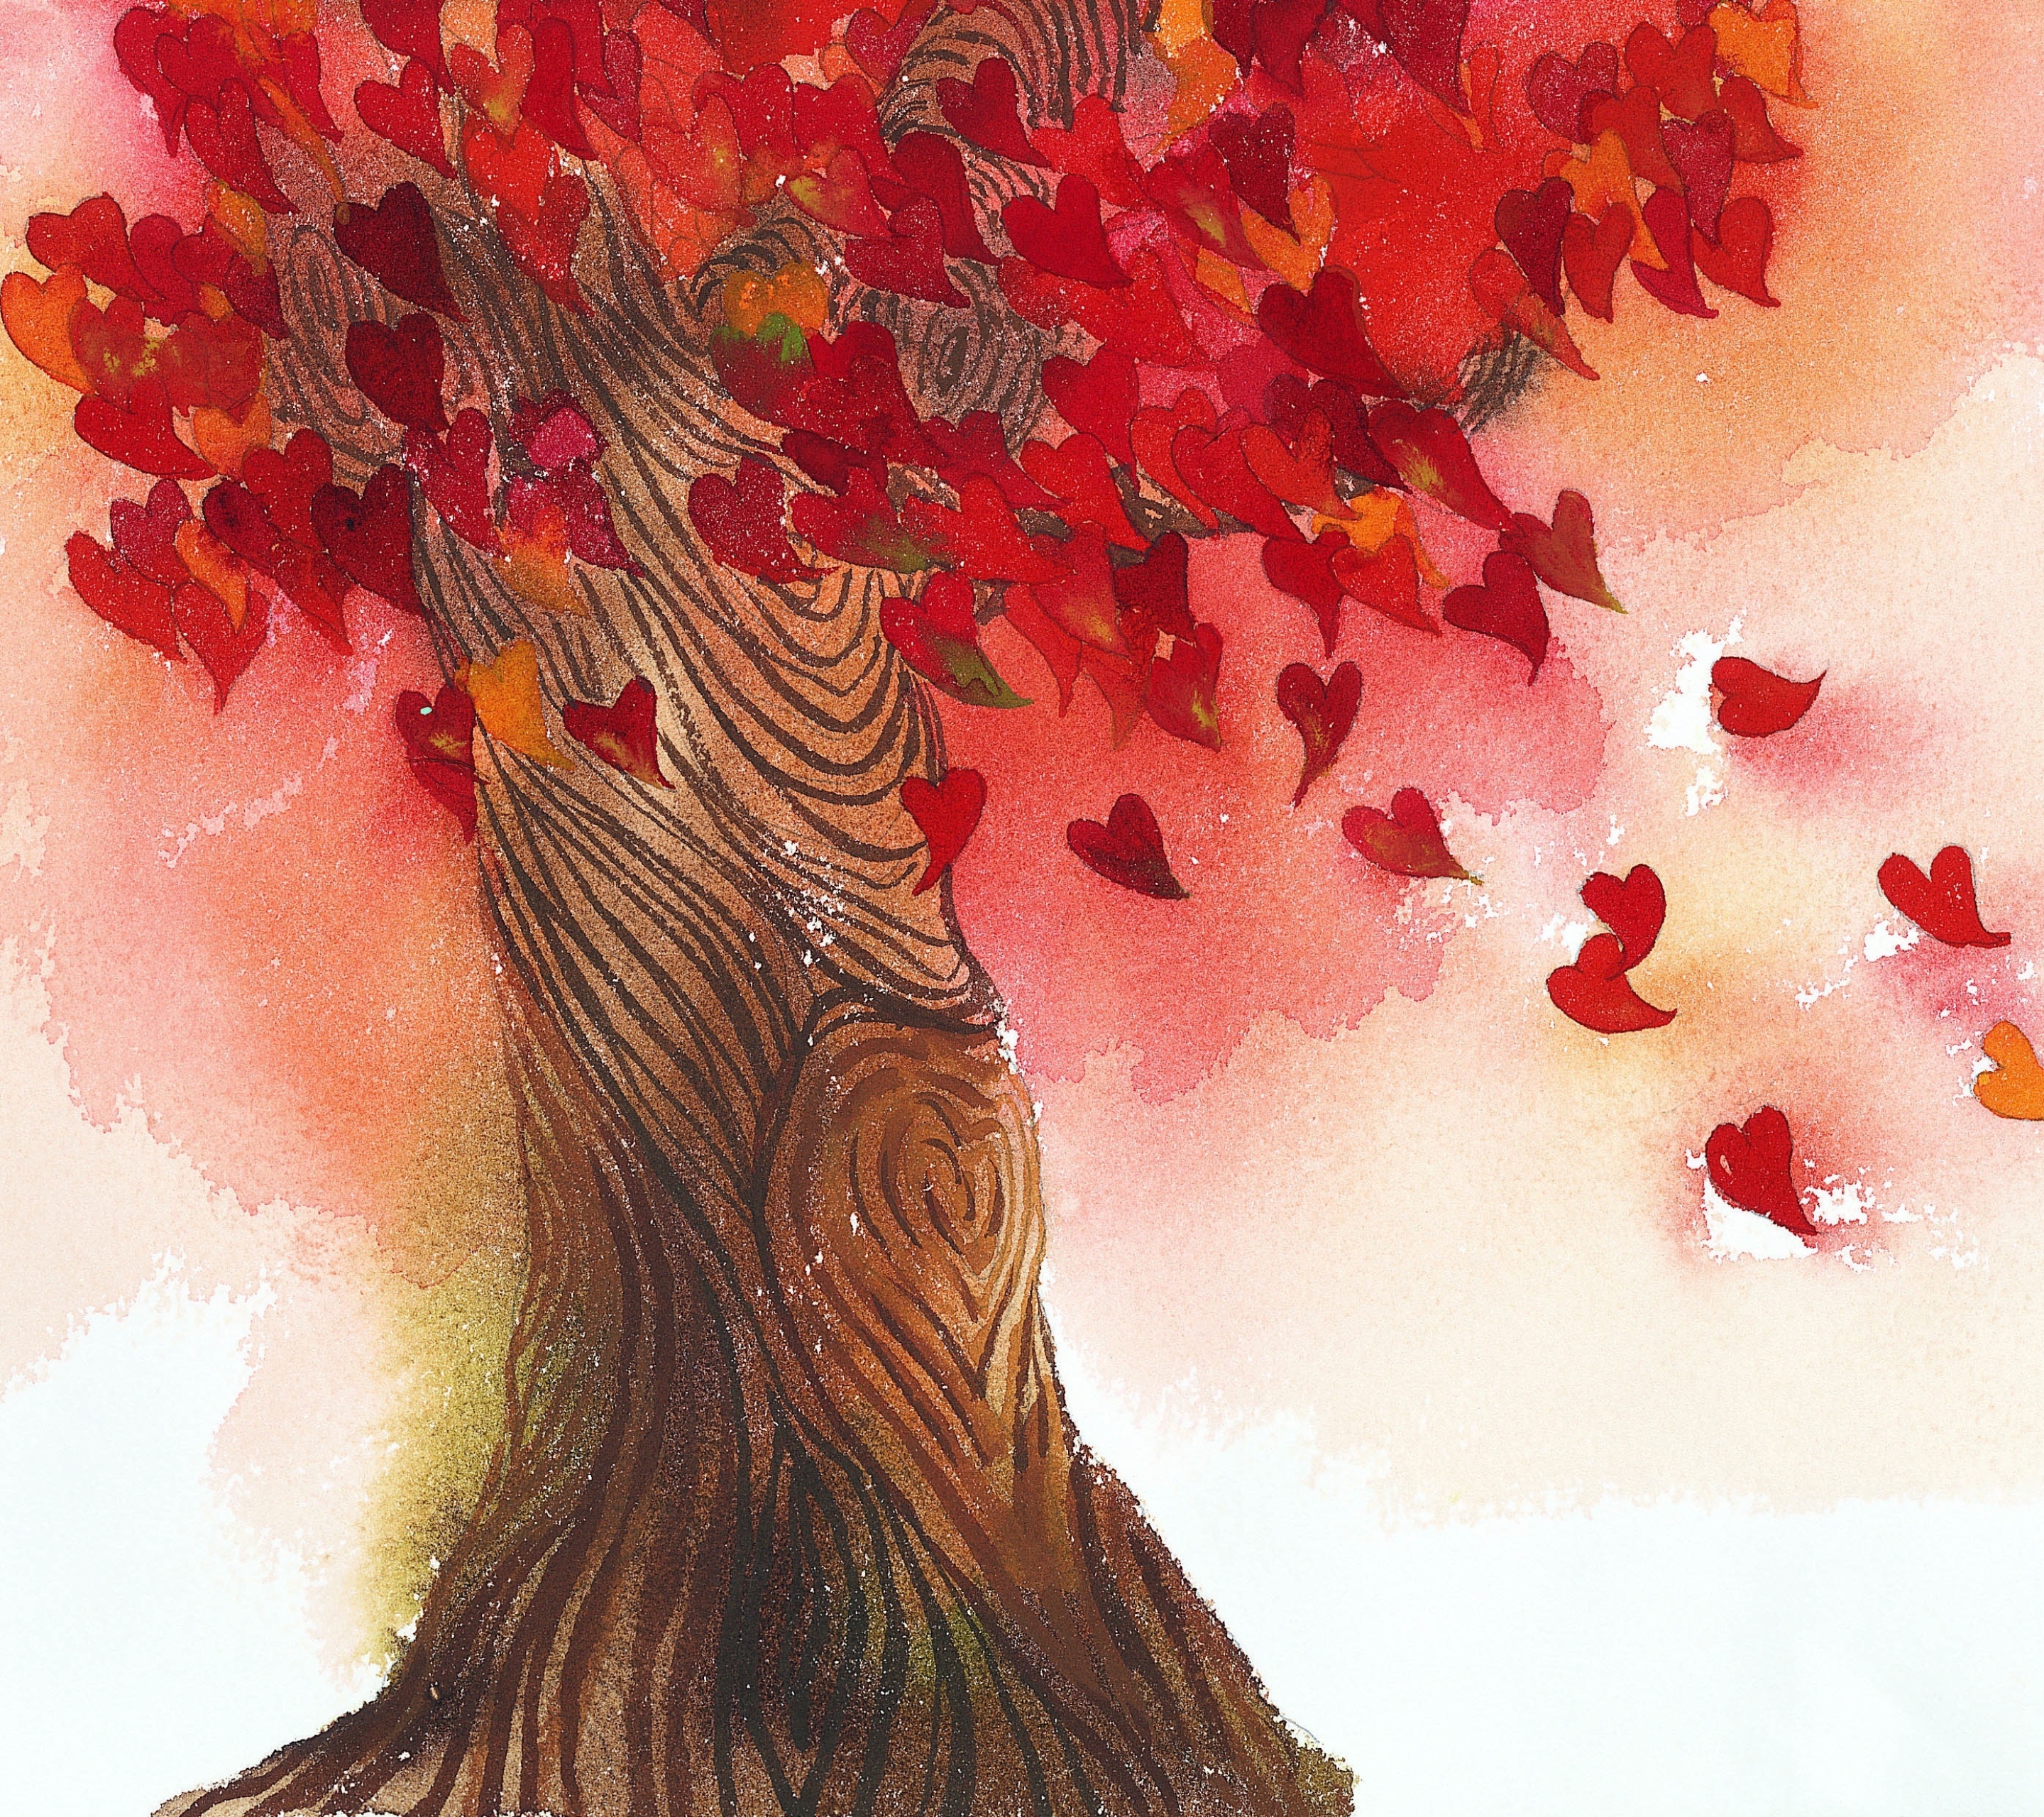 Скачать обои бесплатно Осень, Любовь, Сердце, Падать, День Святого Валентина, Художественные, Романтический картинка на рабочий стол ПК